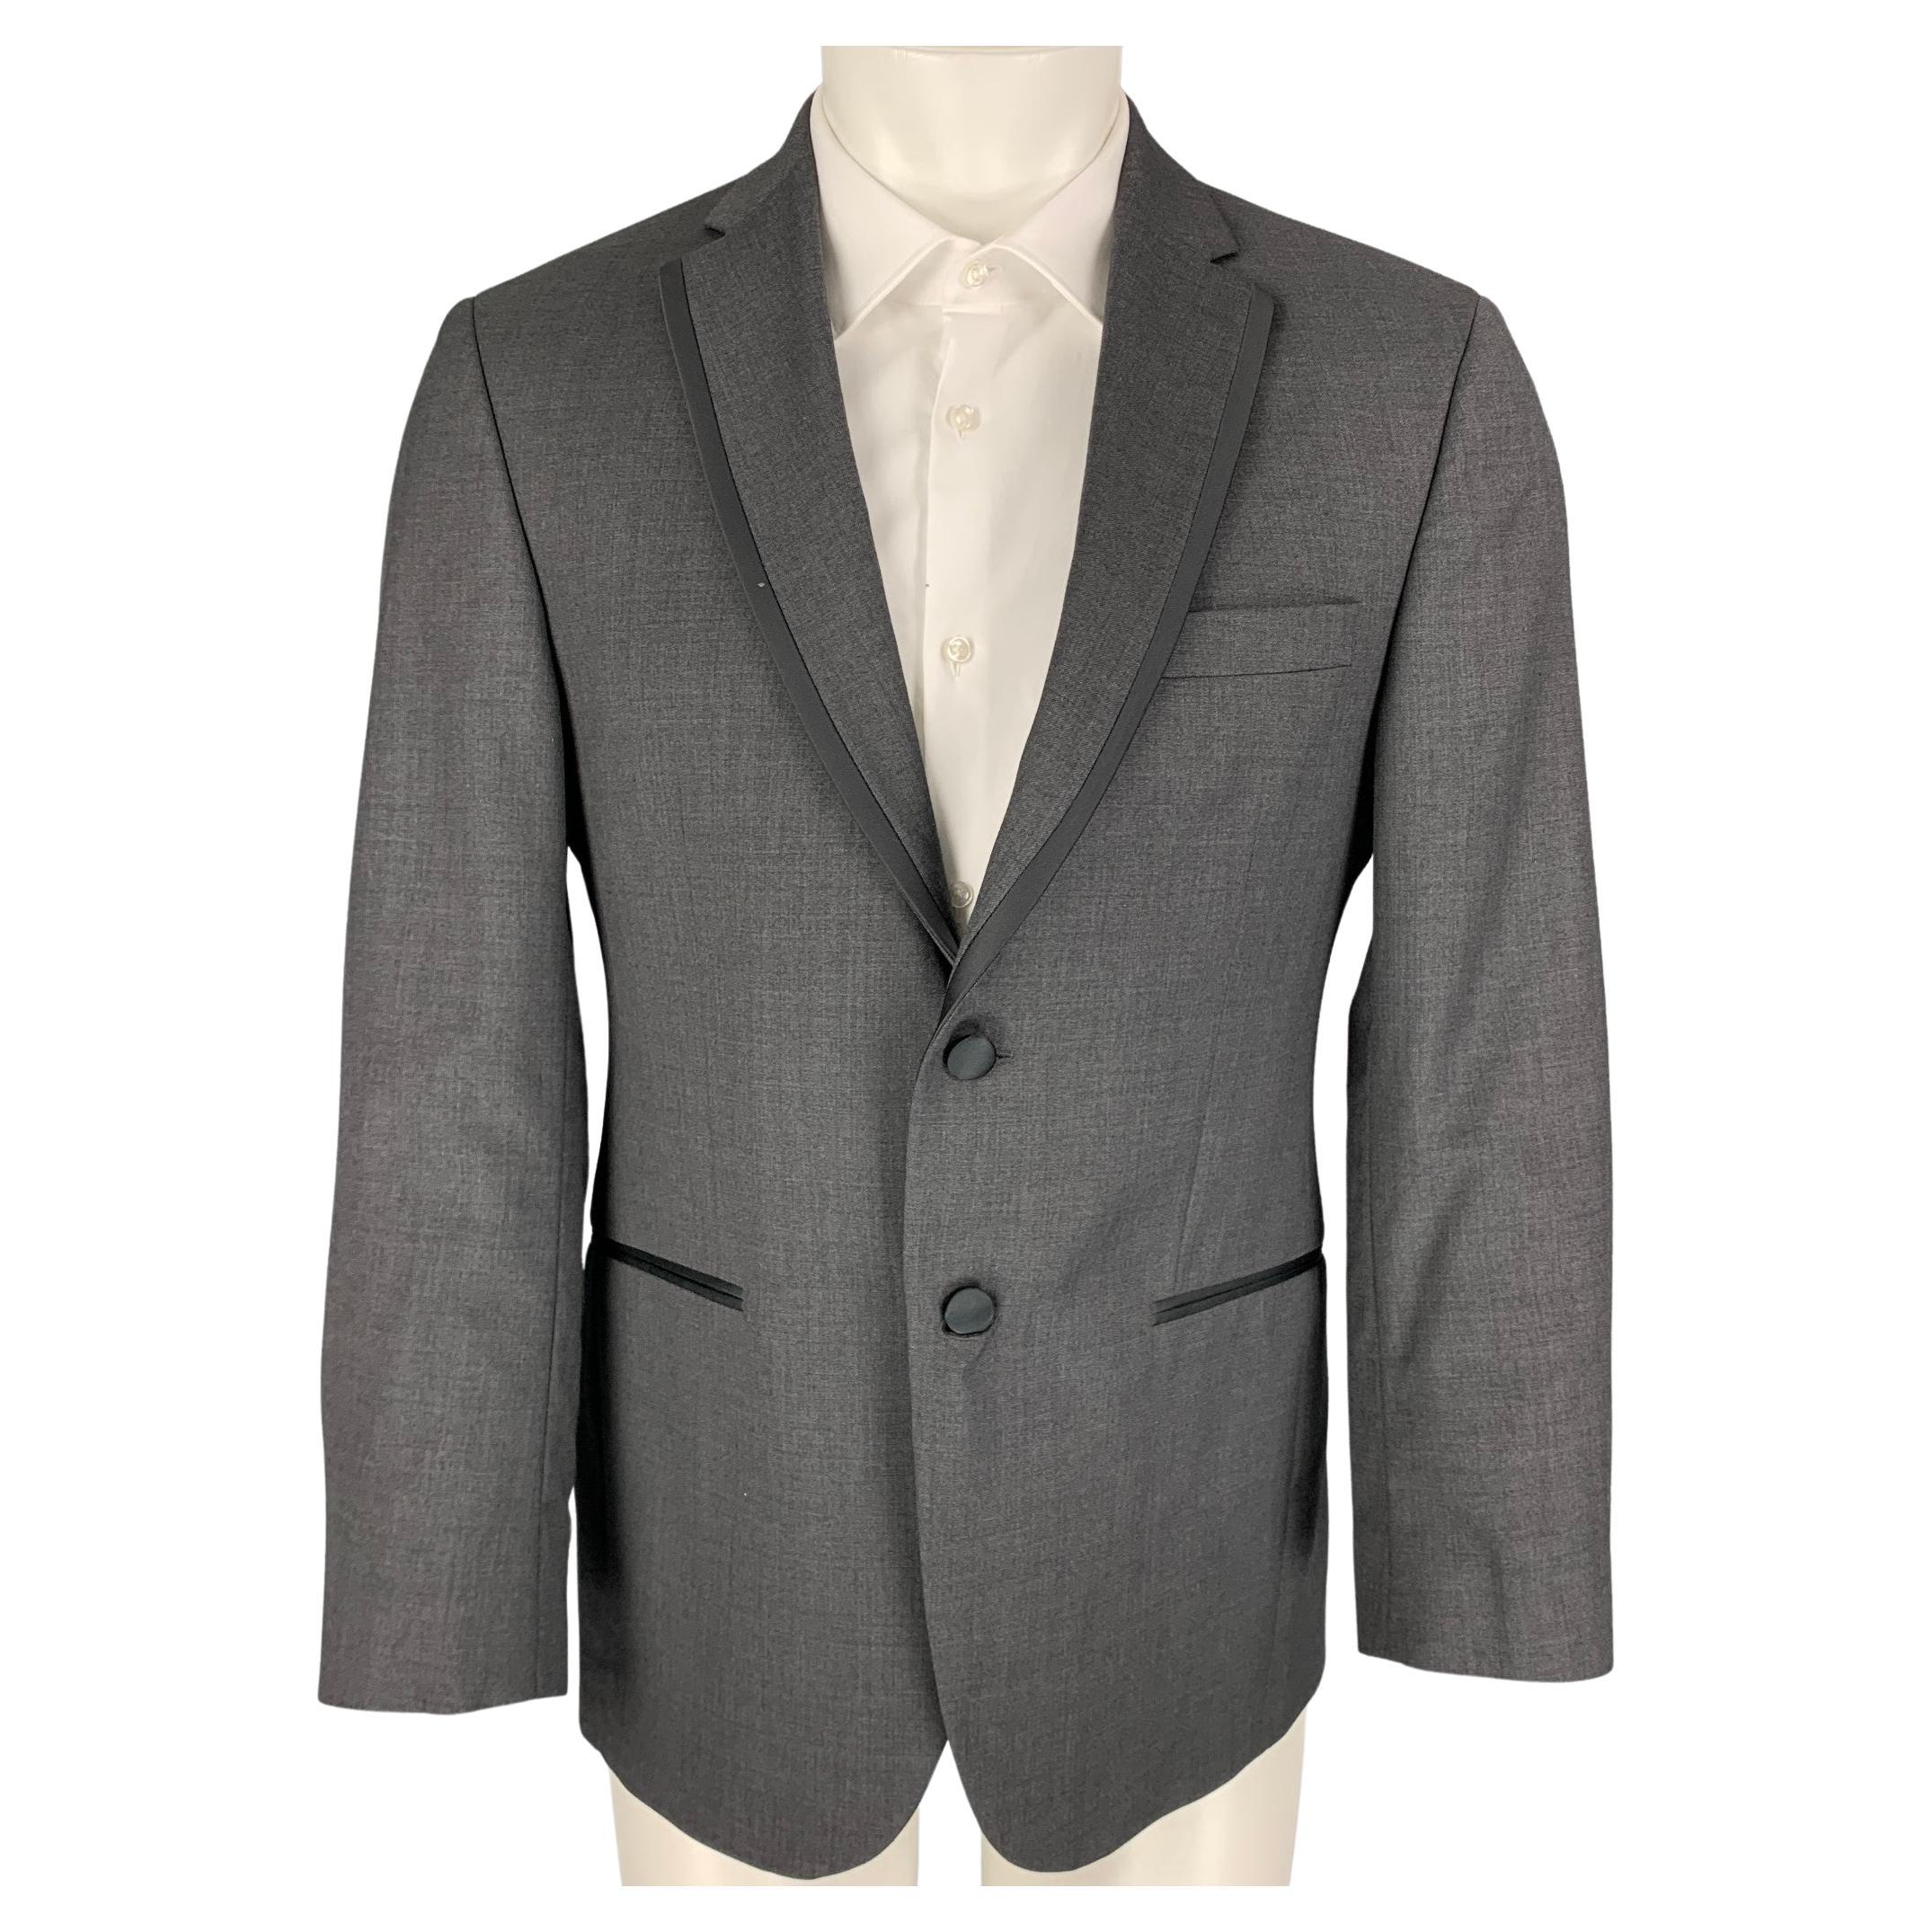 BLACK by VERA WANG Size 38 Grey Black Wool Notch Lapel Tuxedo Sport Coat